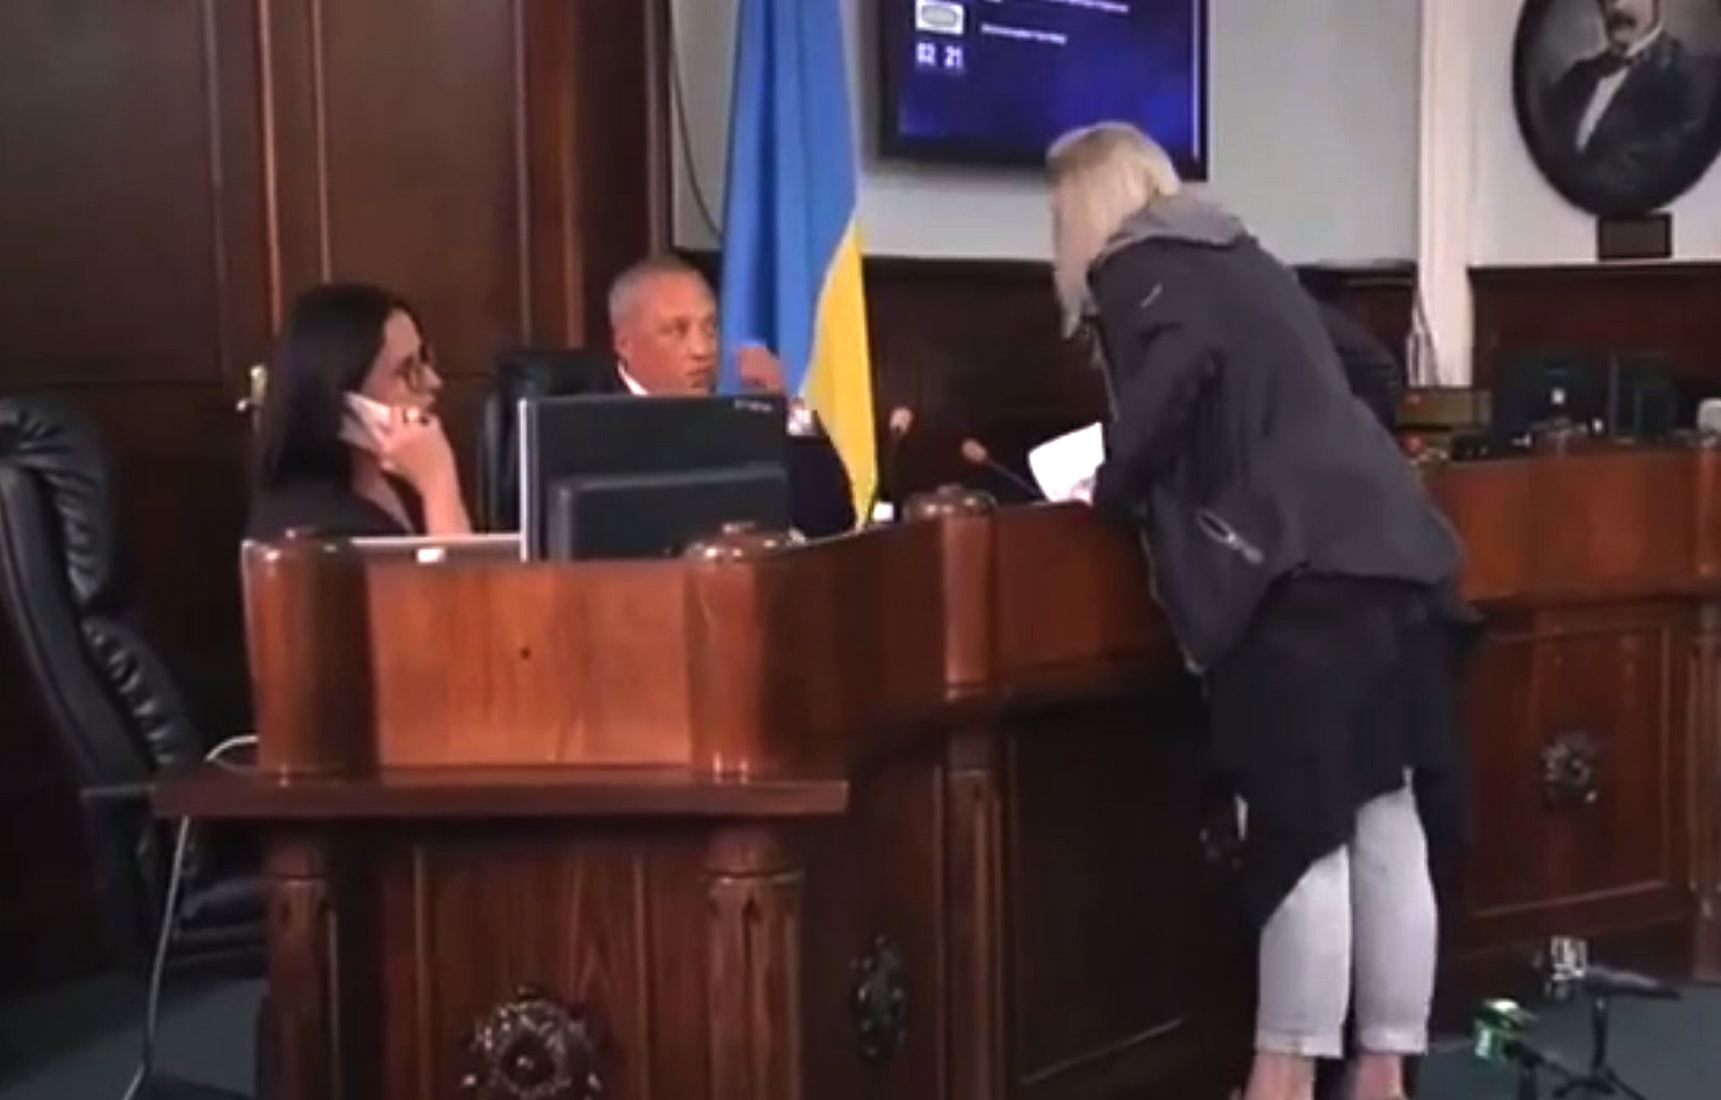 В Черновцах женщина обматерила и побила мэра бумагами во время сессии (видео)